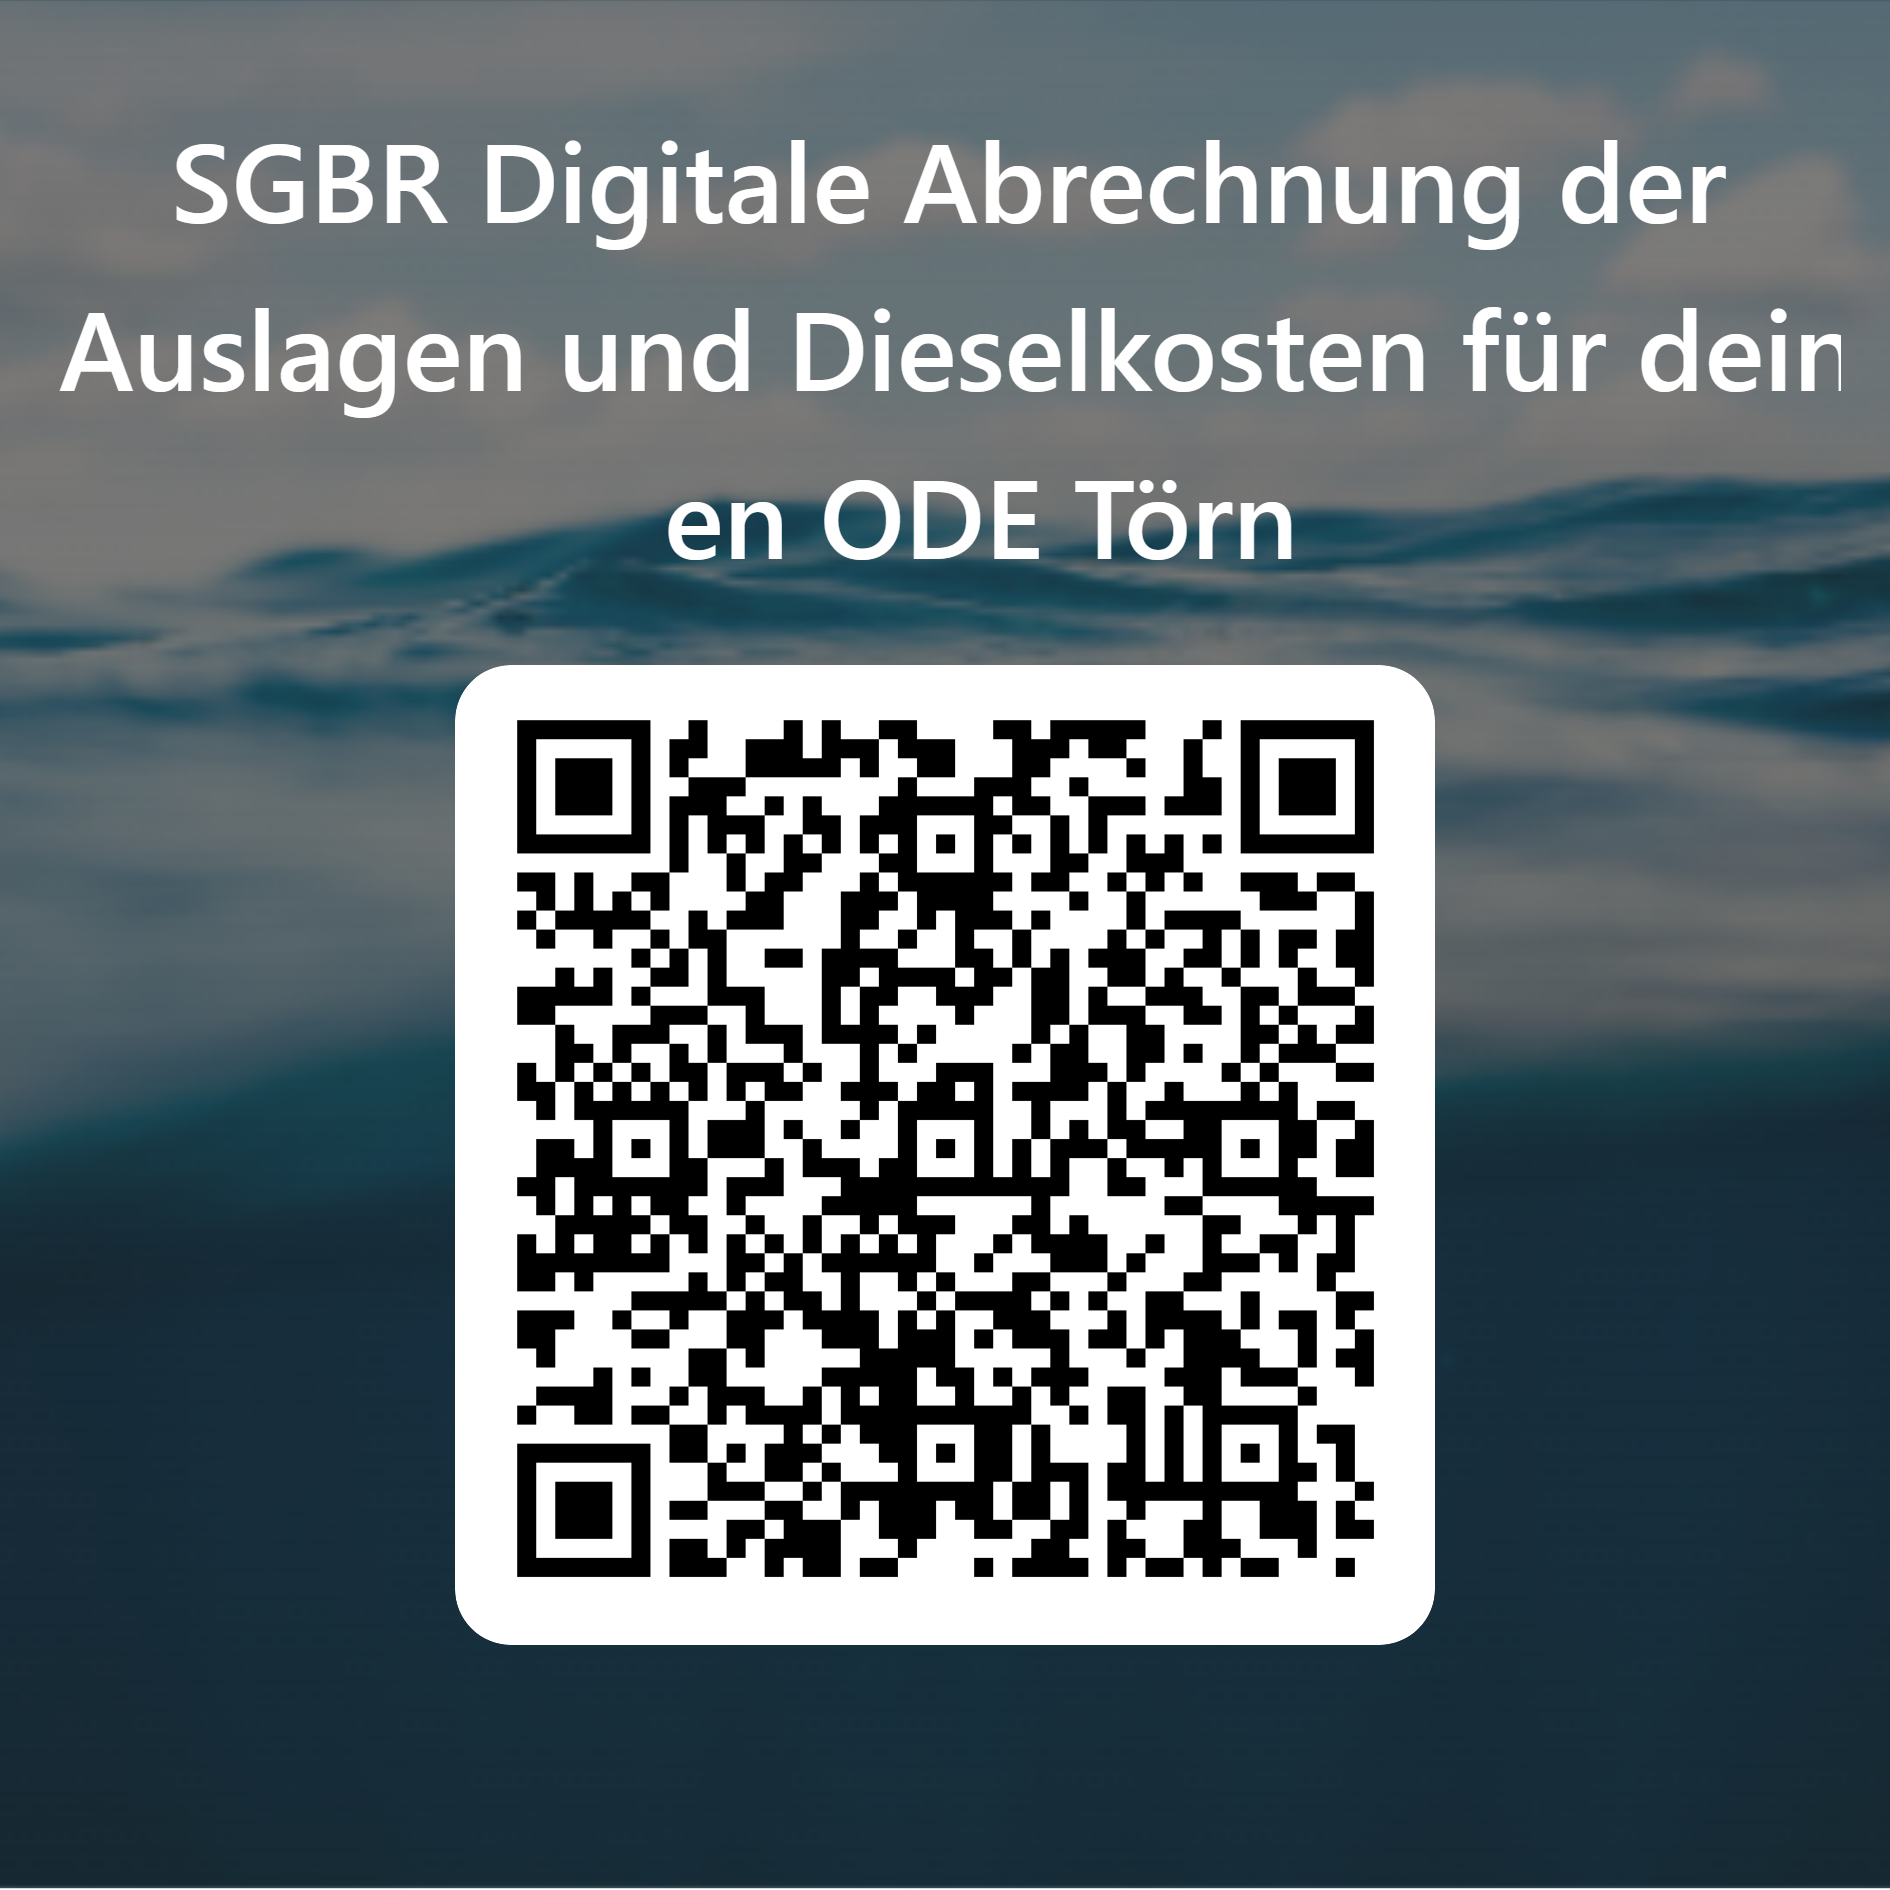 QRCode für SGBR Digitale Abrechnung der Auslagen und Dieselkosten für deinen ODE Törn